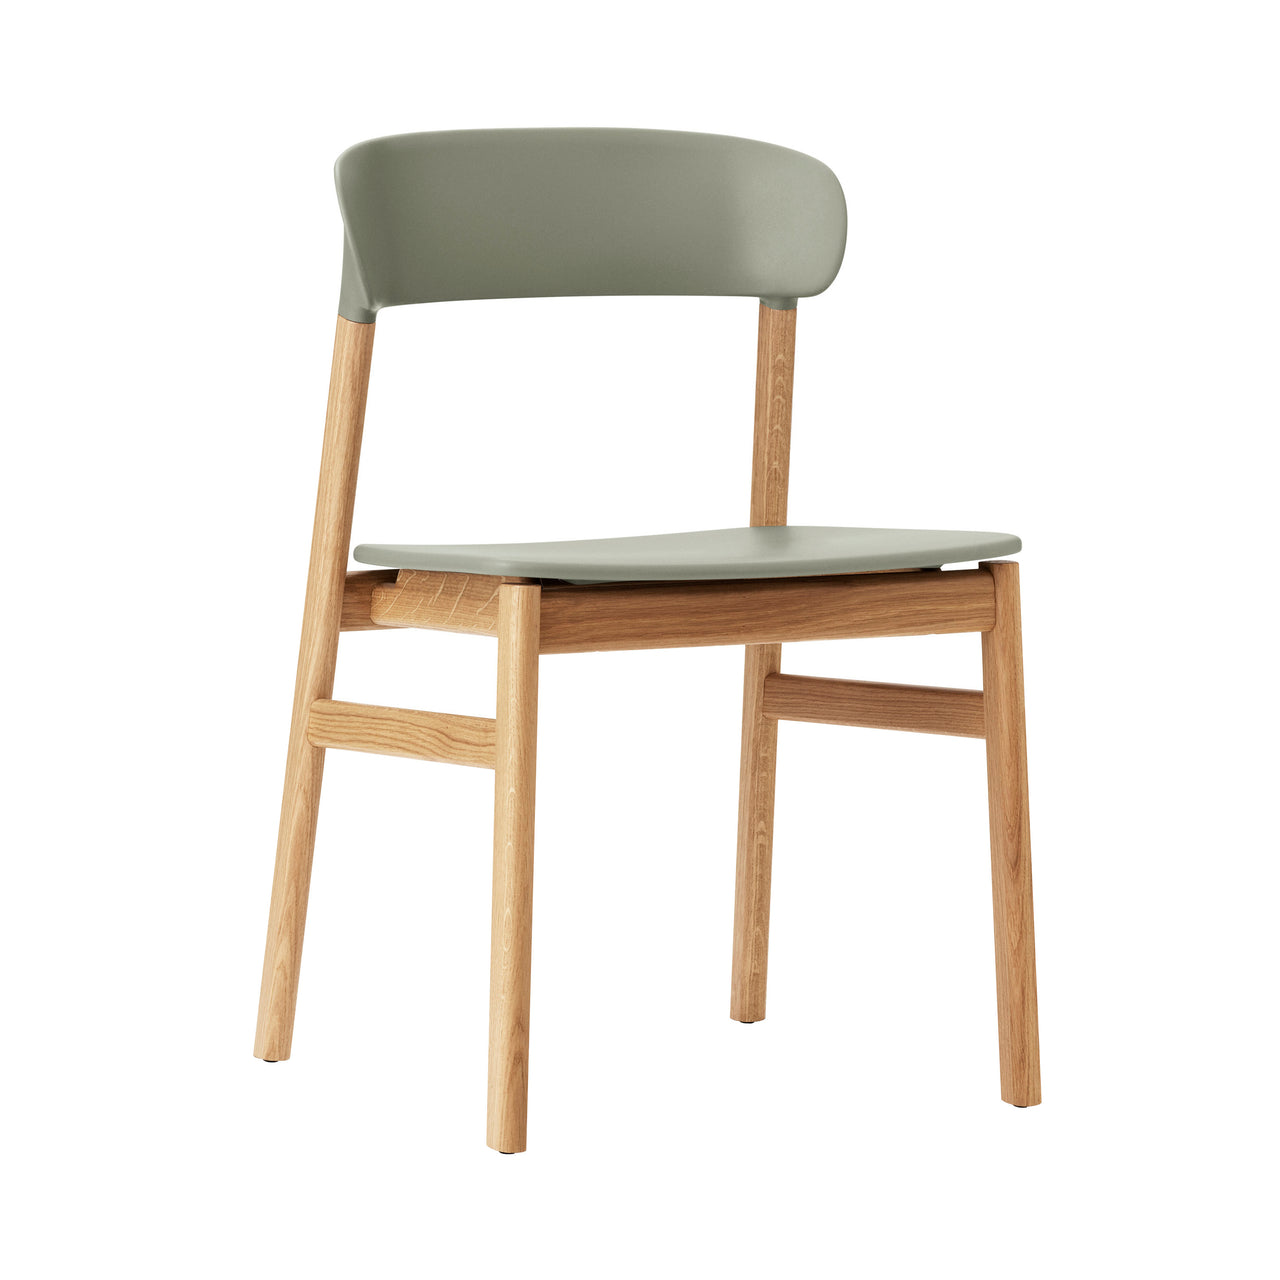 Herit Chair: Oak + Dusty Green